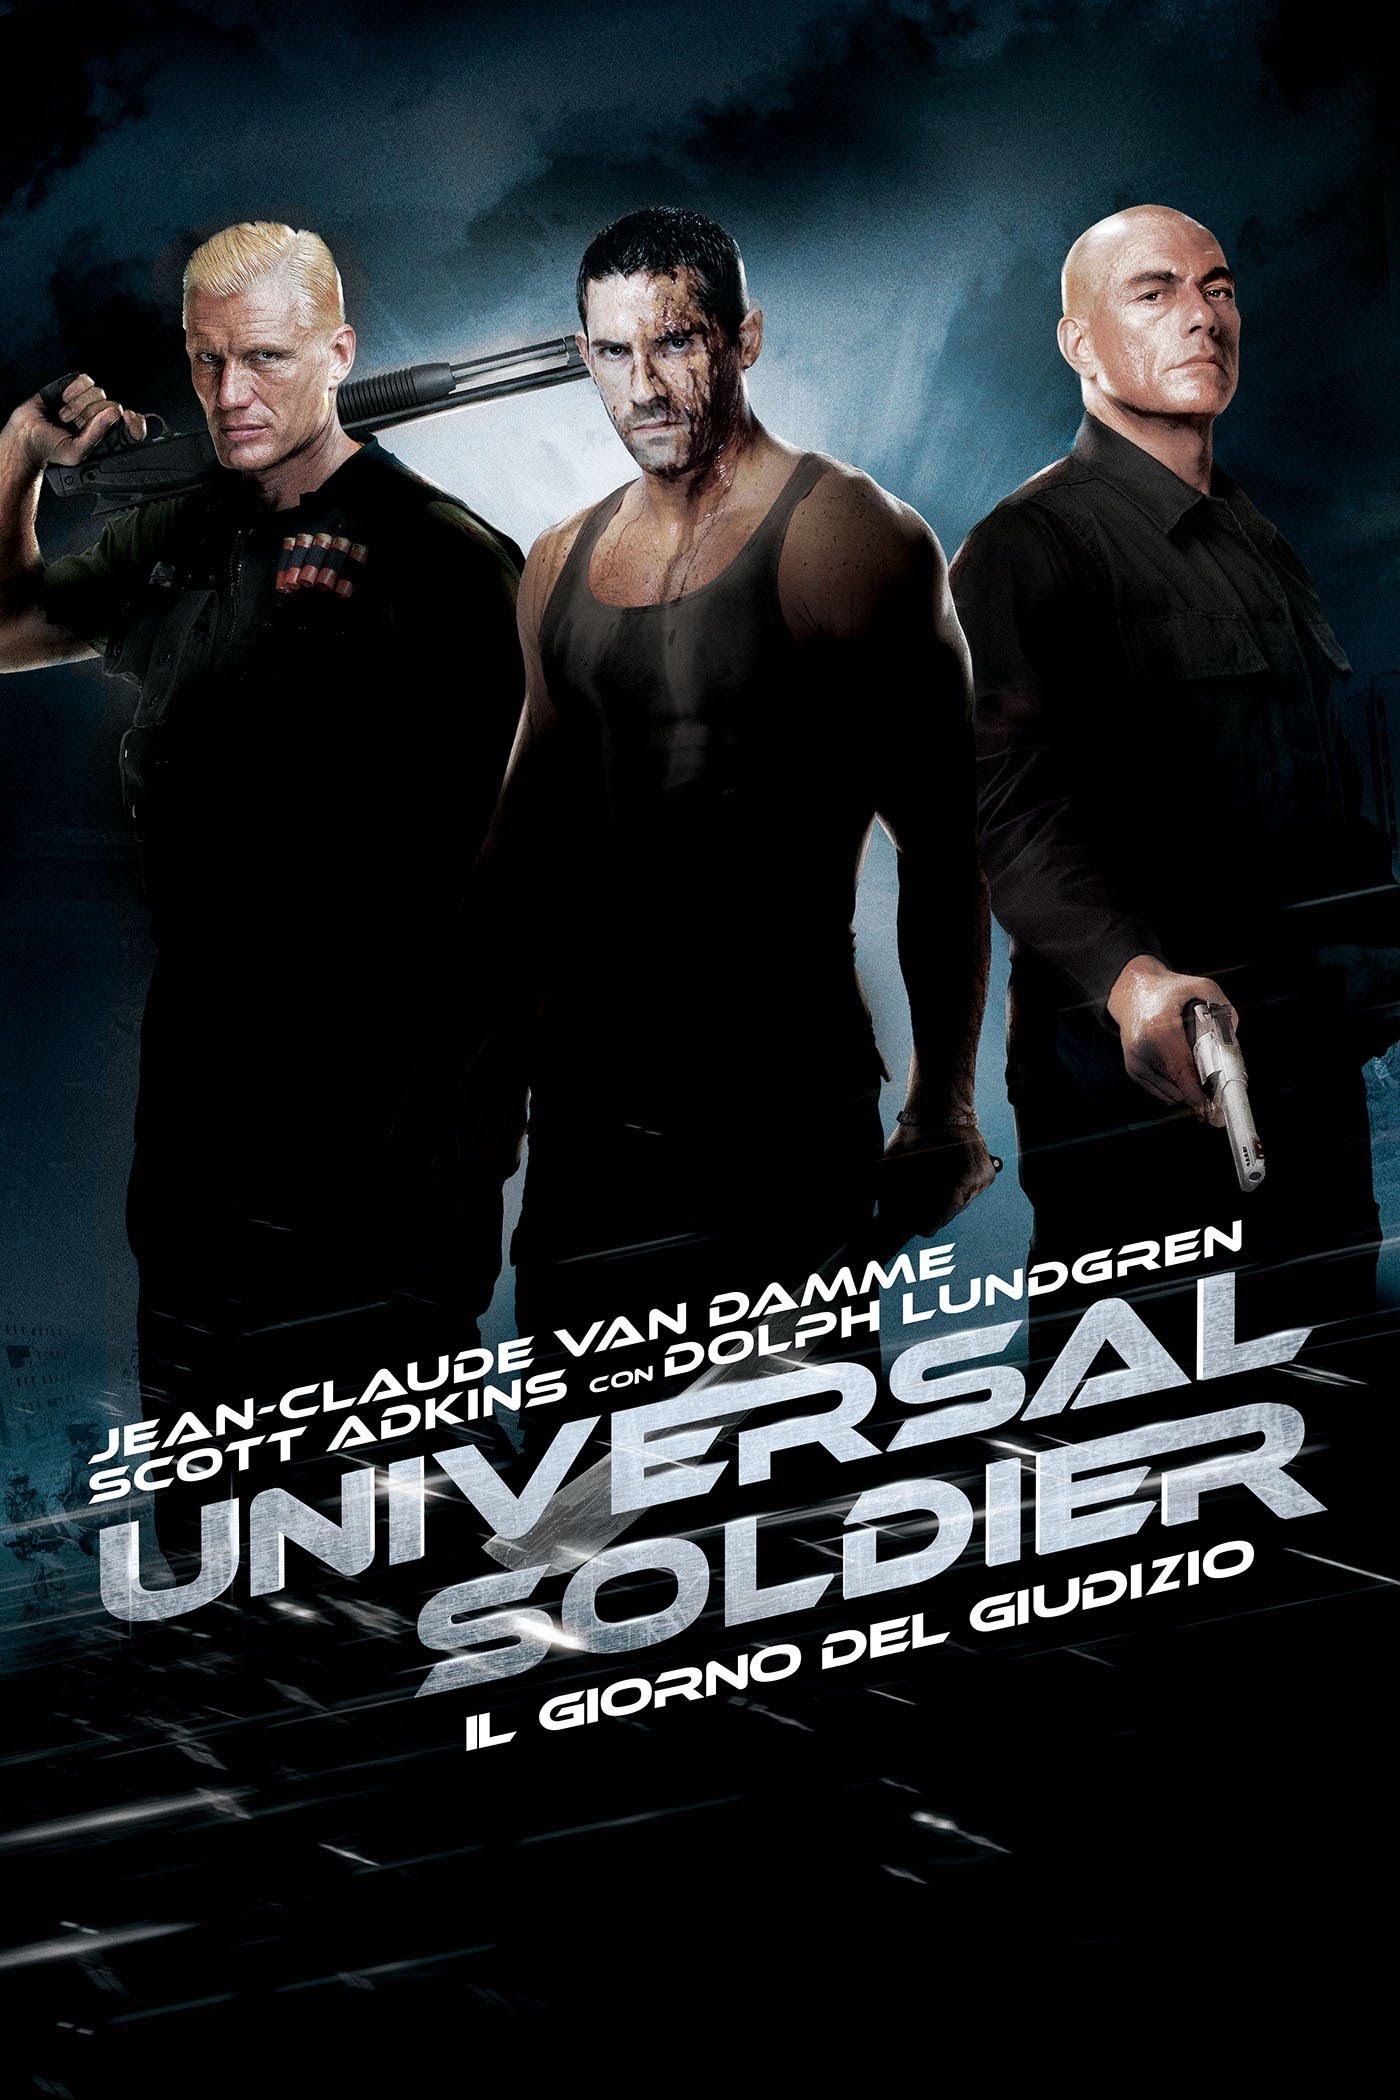 Universal Soldier: Il giorno del giudizio [HD] (2014)